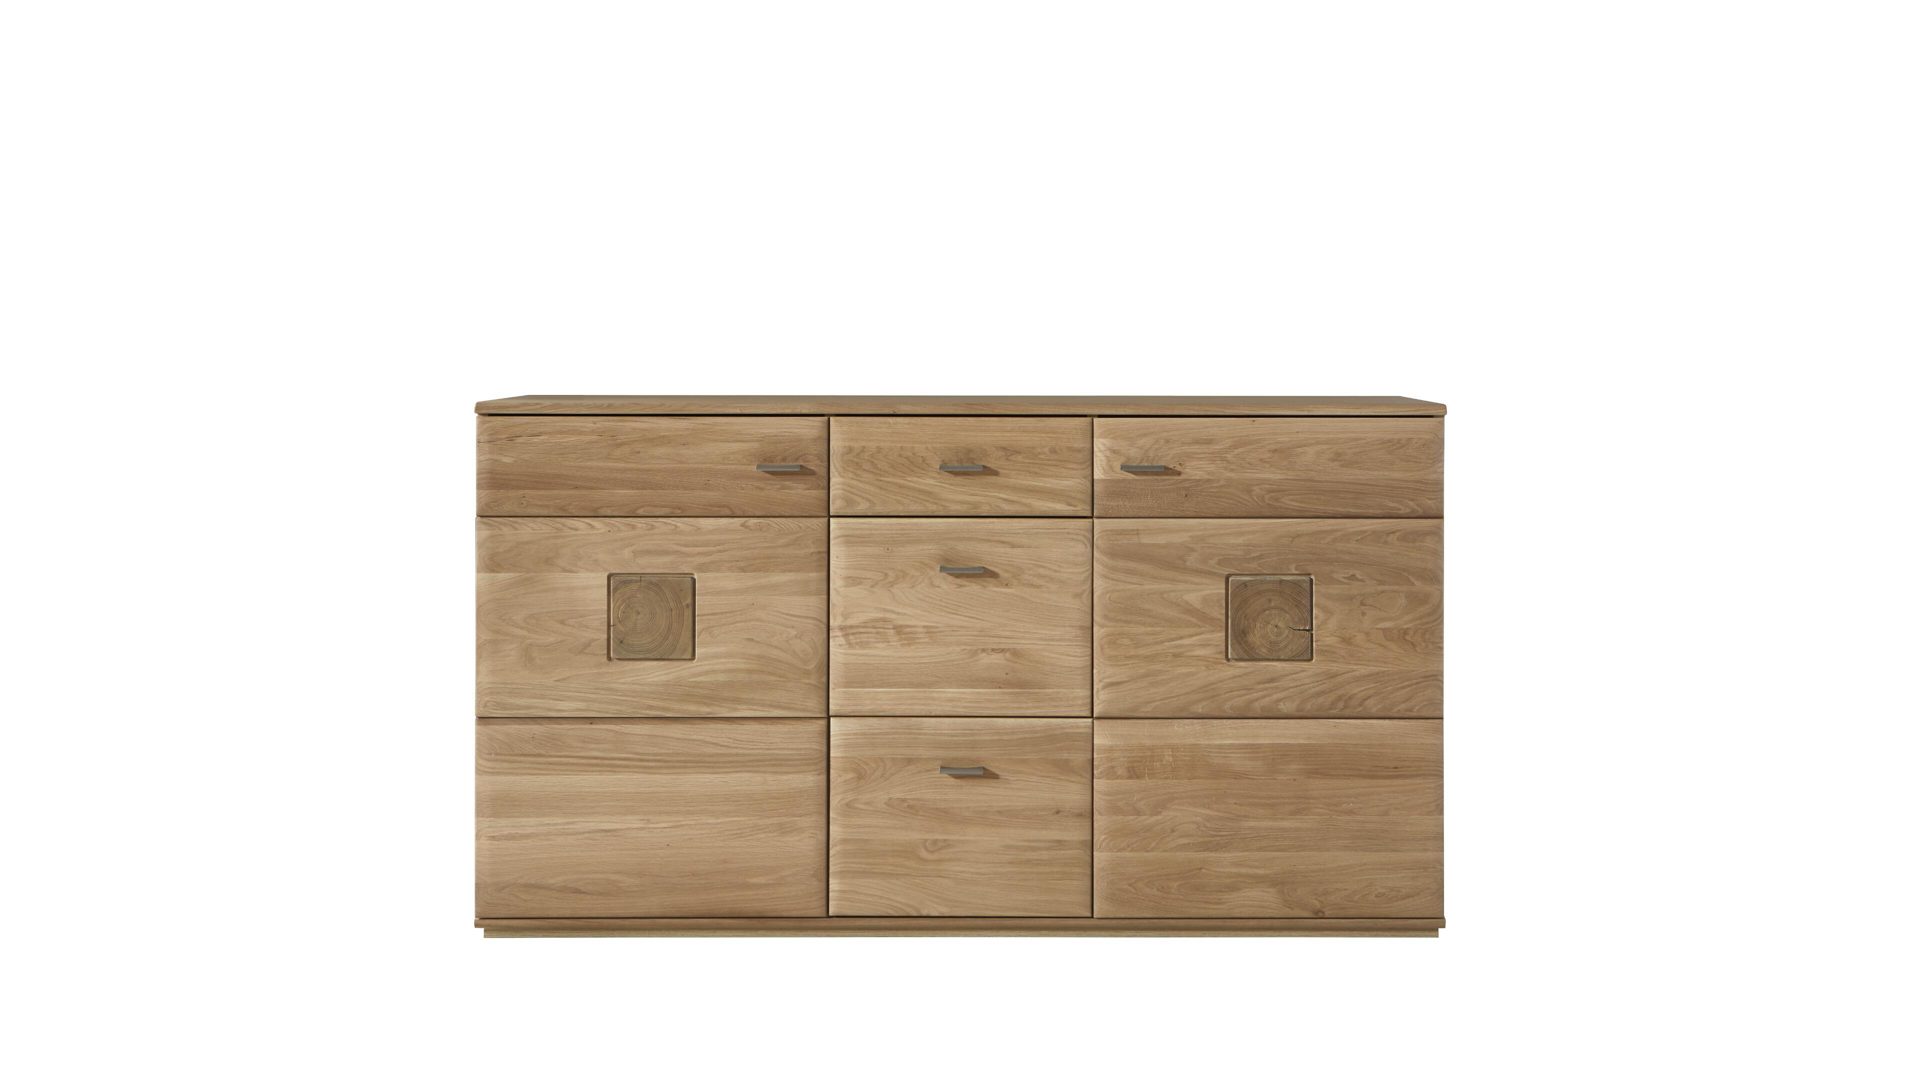 Sideboard Mca furniture aus Holz in Holzfarben Sideboard biancofarbenes Eichenholz & Hirnholz – drei Türen, drei Schubladen